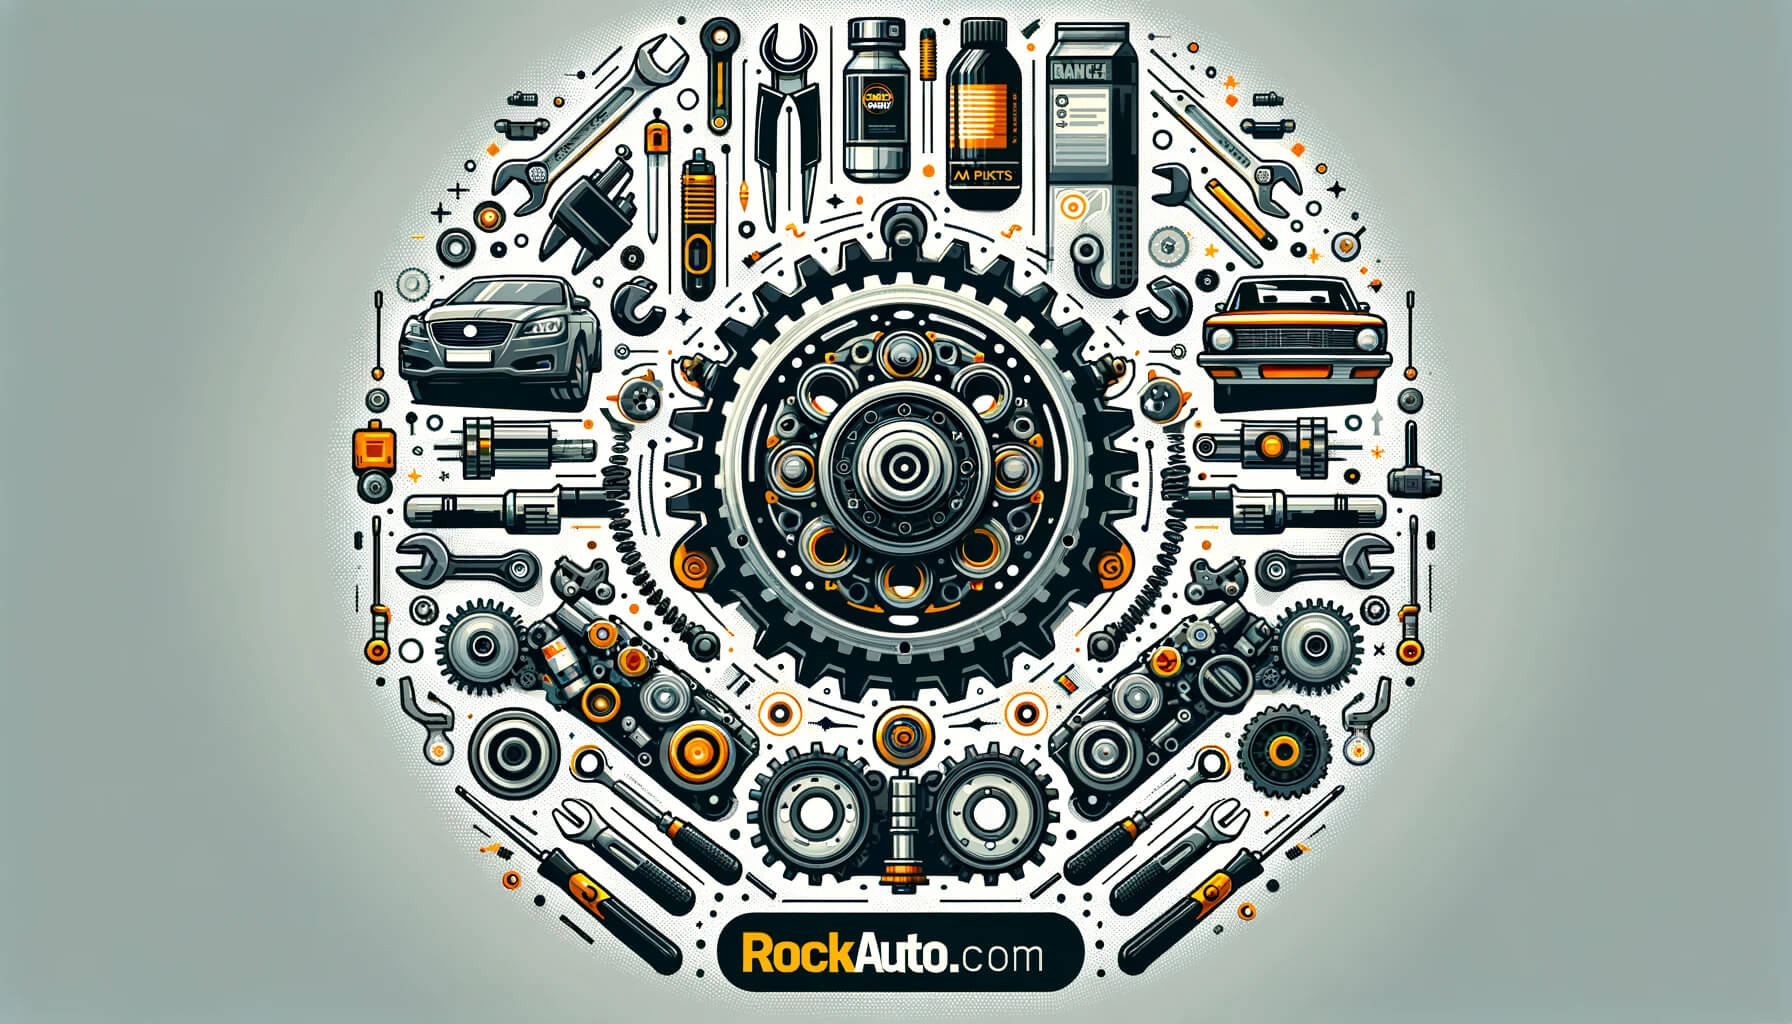 Rockauto.com - Auto parts store